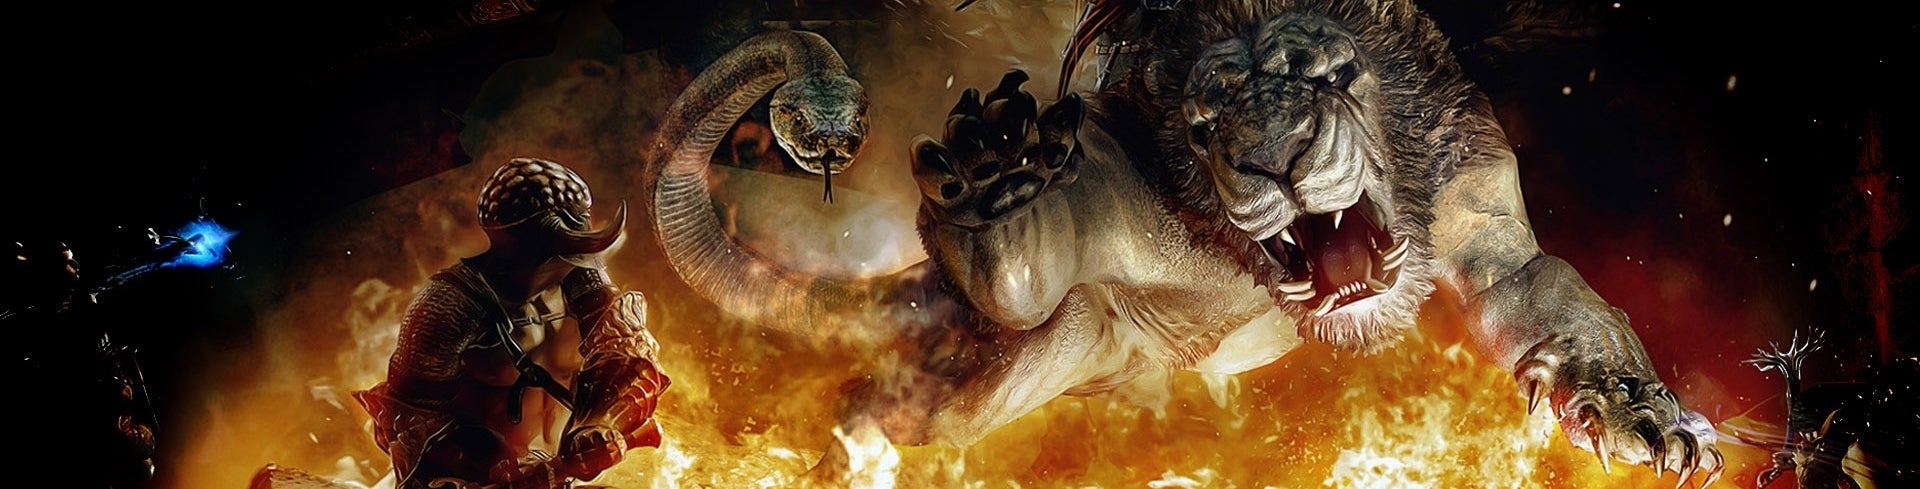 Bilder zu "Deep Down" im Dungeon: Dragon's Dogma - Dark Arisen